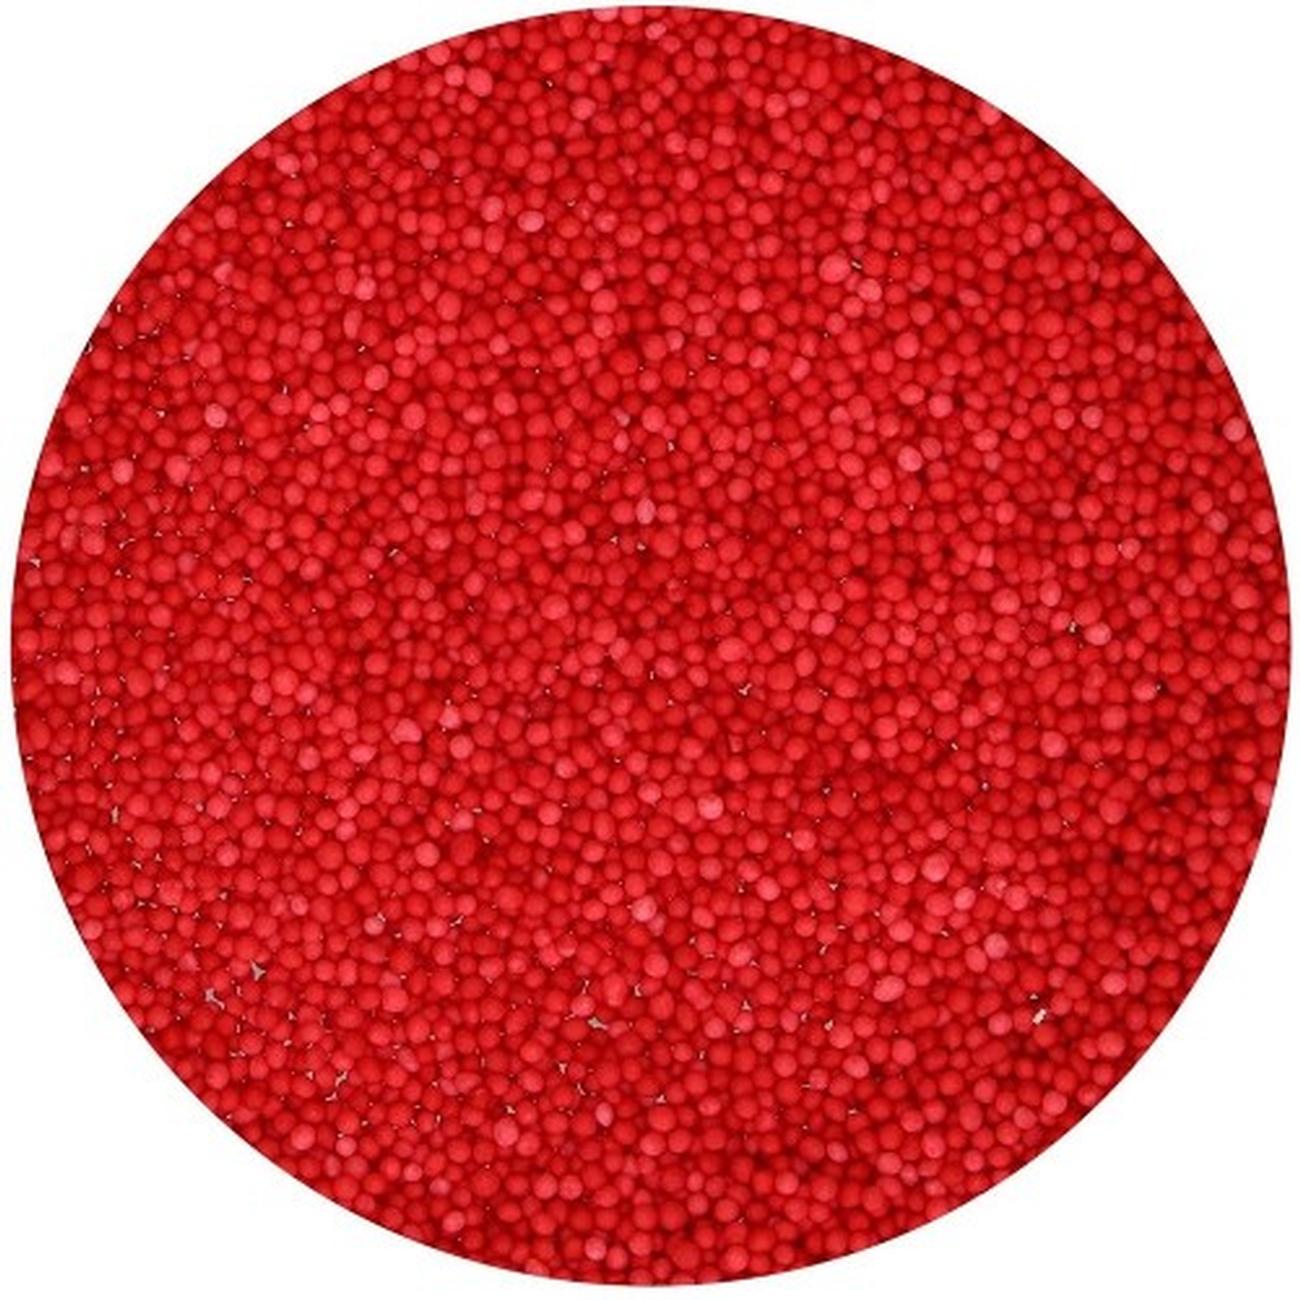 funcakes-nonpareils-sprinkles-red-80g - FunCakes Nonpareils Edible Sprinkles Red 80 g